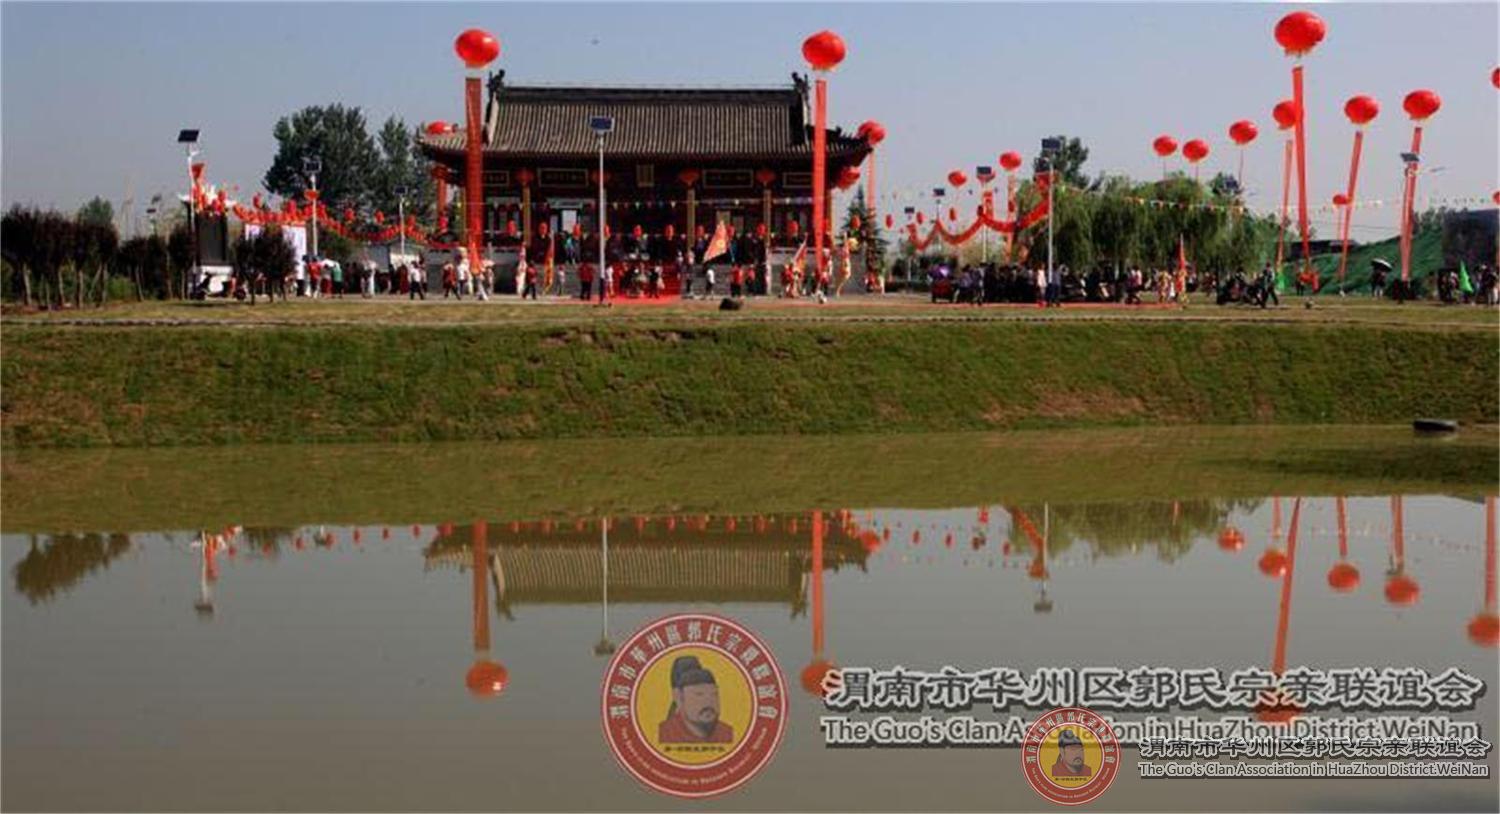 2018郭子仪文化旅游节陕西华州费用收支及捐款捐物公布